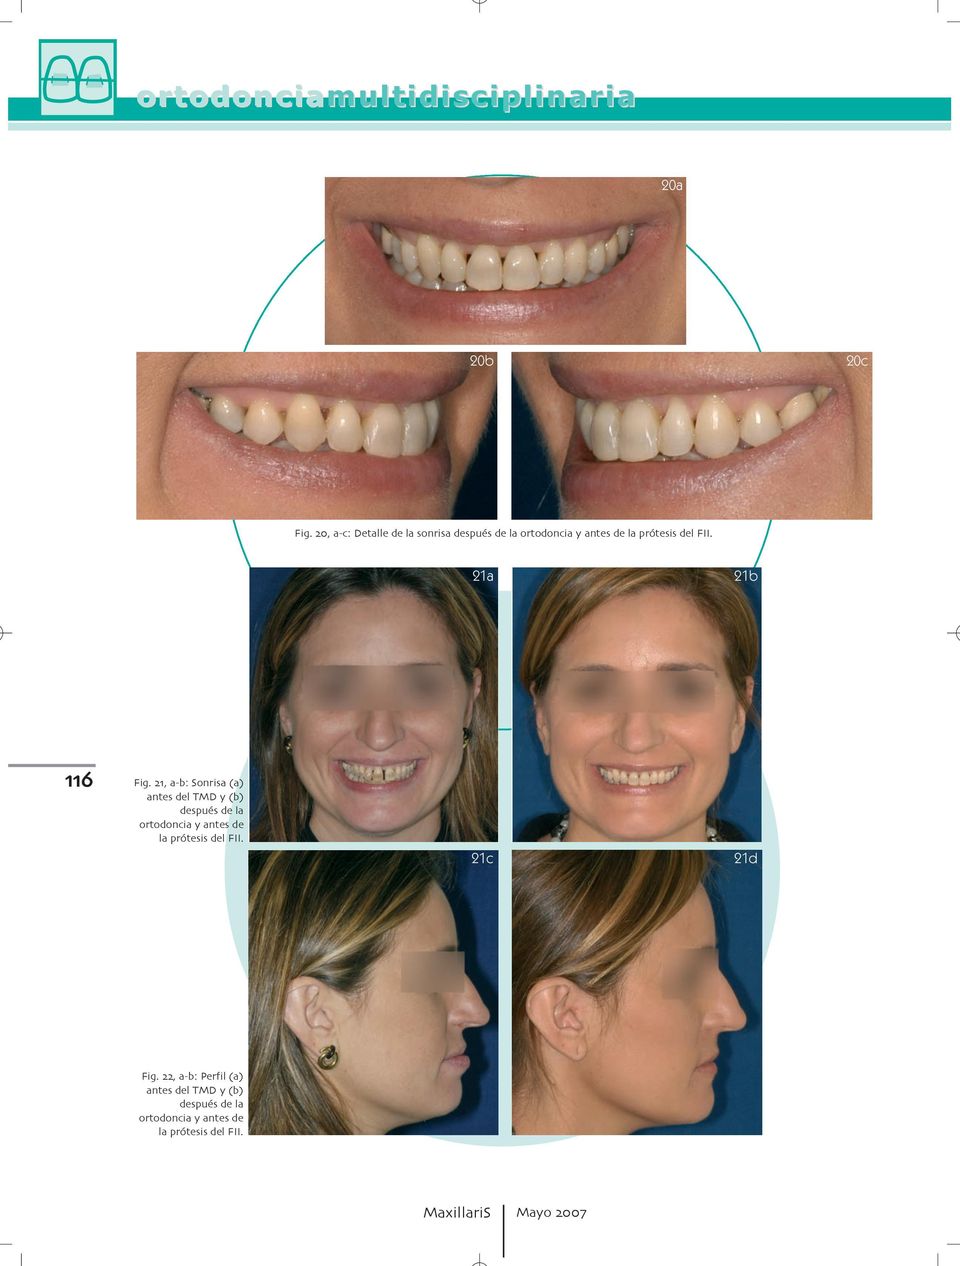 después de la ortodoncia y antes de la prótesis del FII 21c 21d Fig a b: